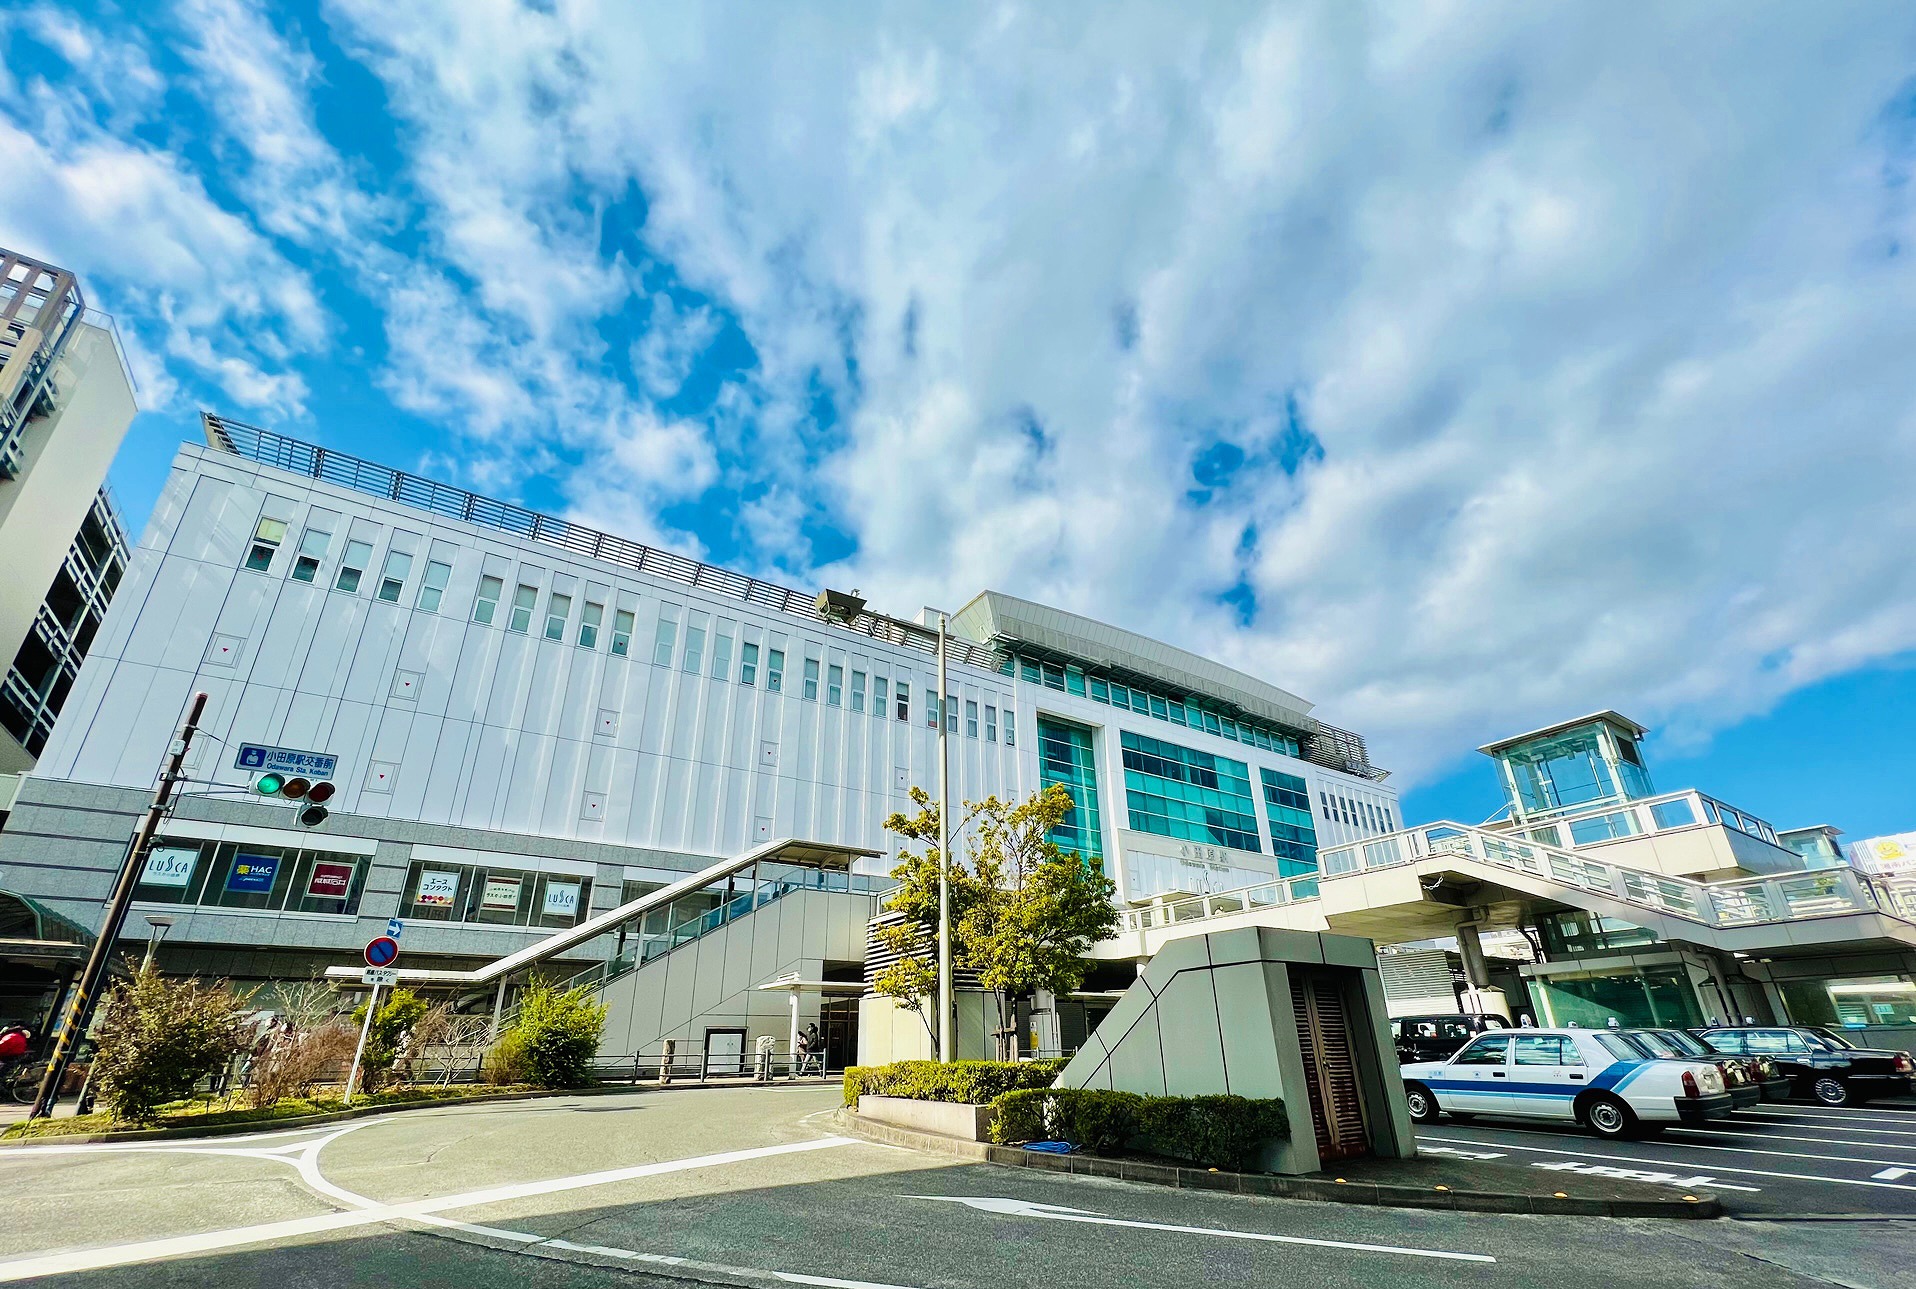 ▲小田原駅東口は市内最大の観光地である「小田原城址公園」の正面玄関とされており、駅前には観光バスが停車する広大な駐車場が広がっていた